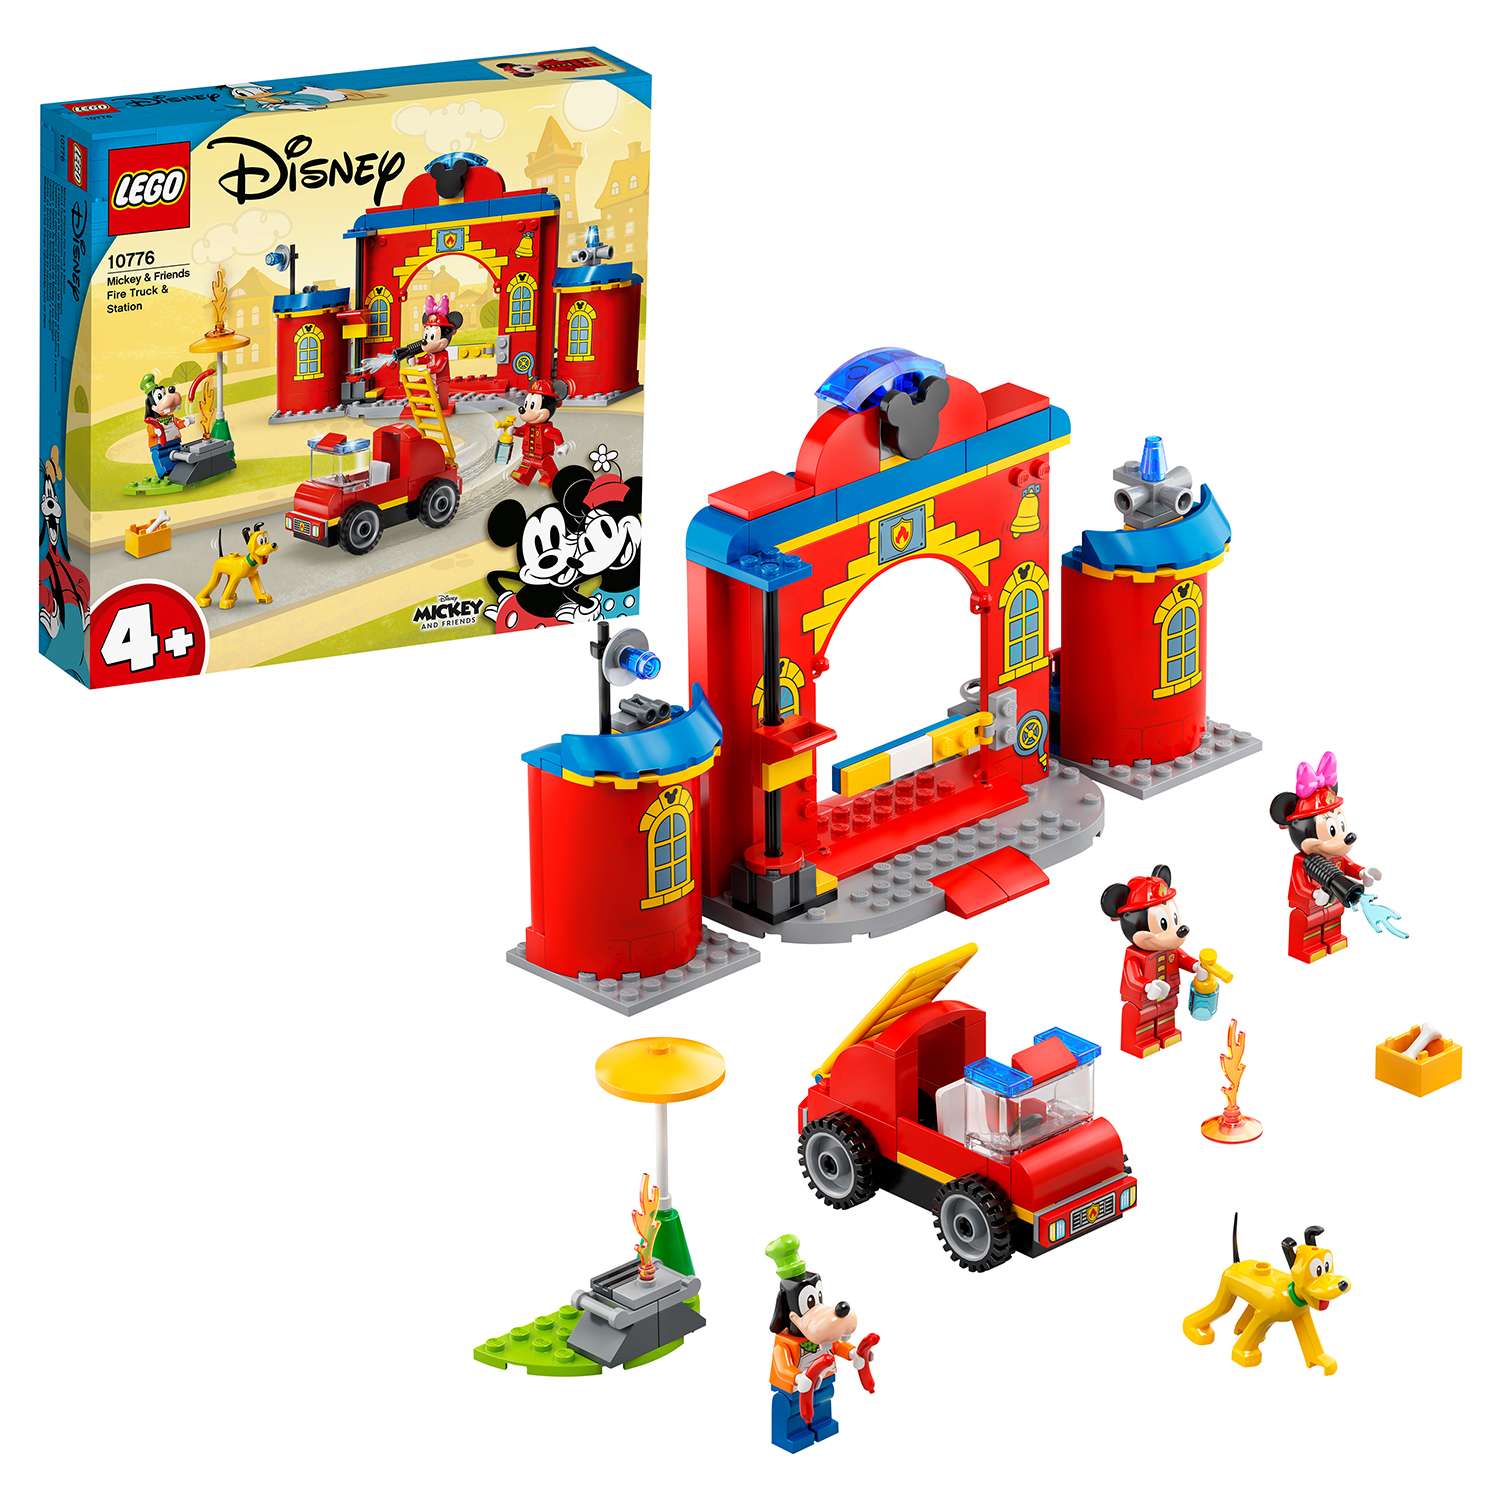 Конструктор LEGO Mickey and Friends Пожарная часть и машина Микки и его друзей 10776 - фото 1